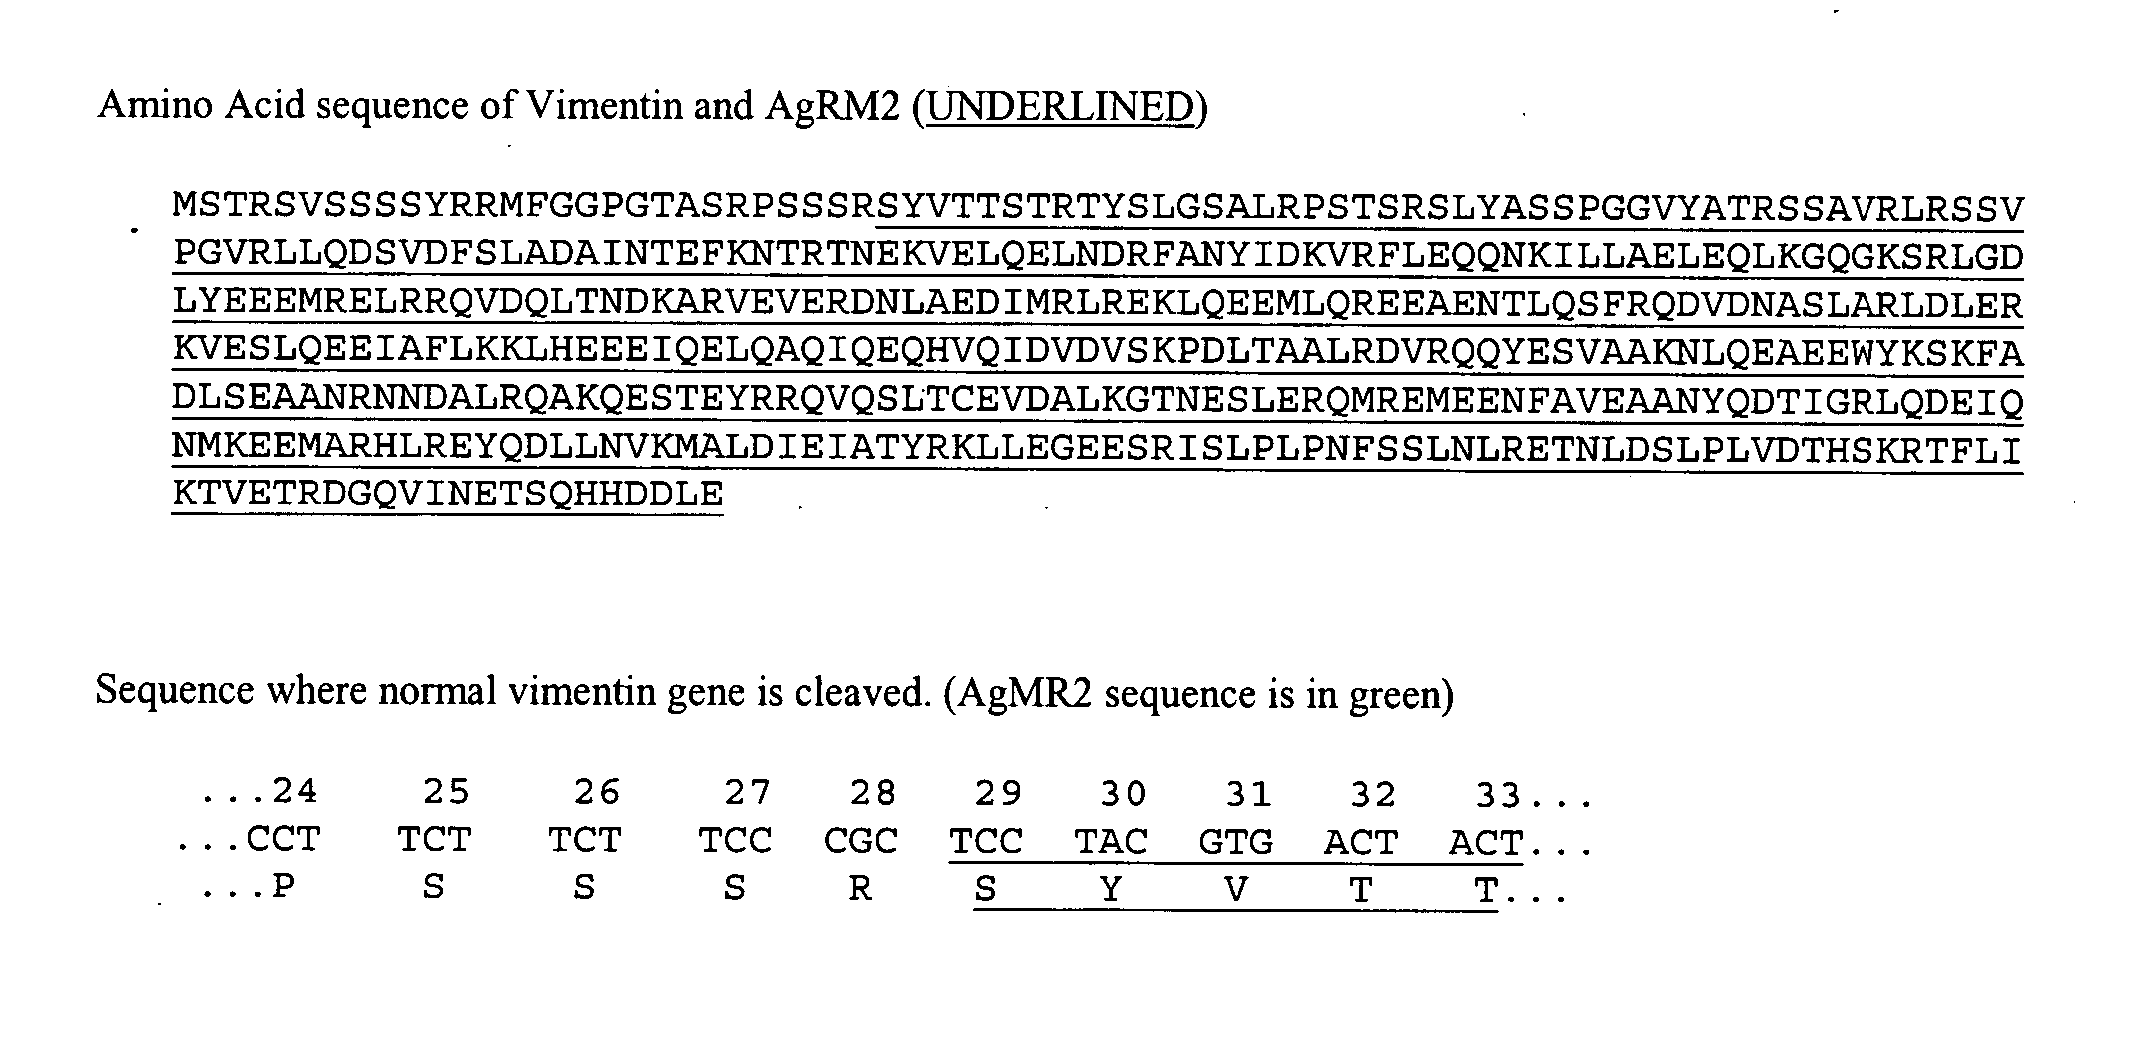 AgRM2 antigen